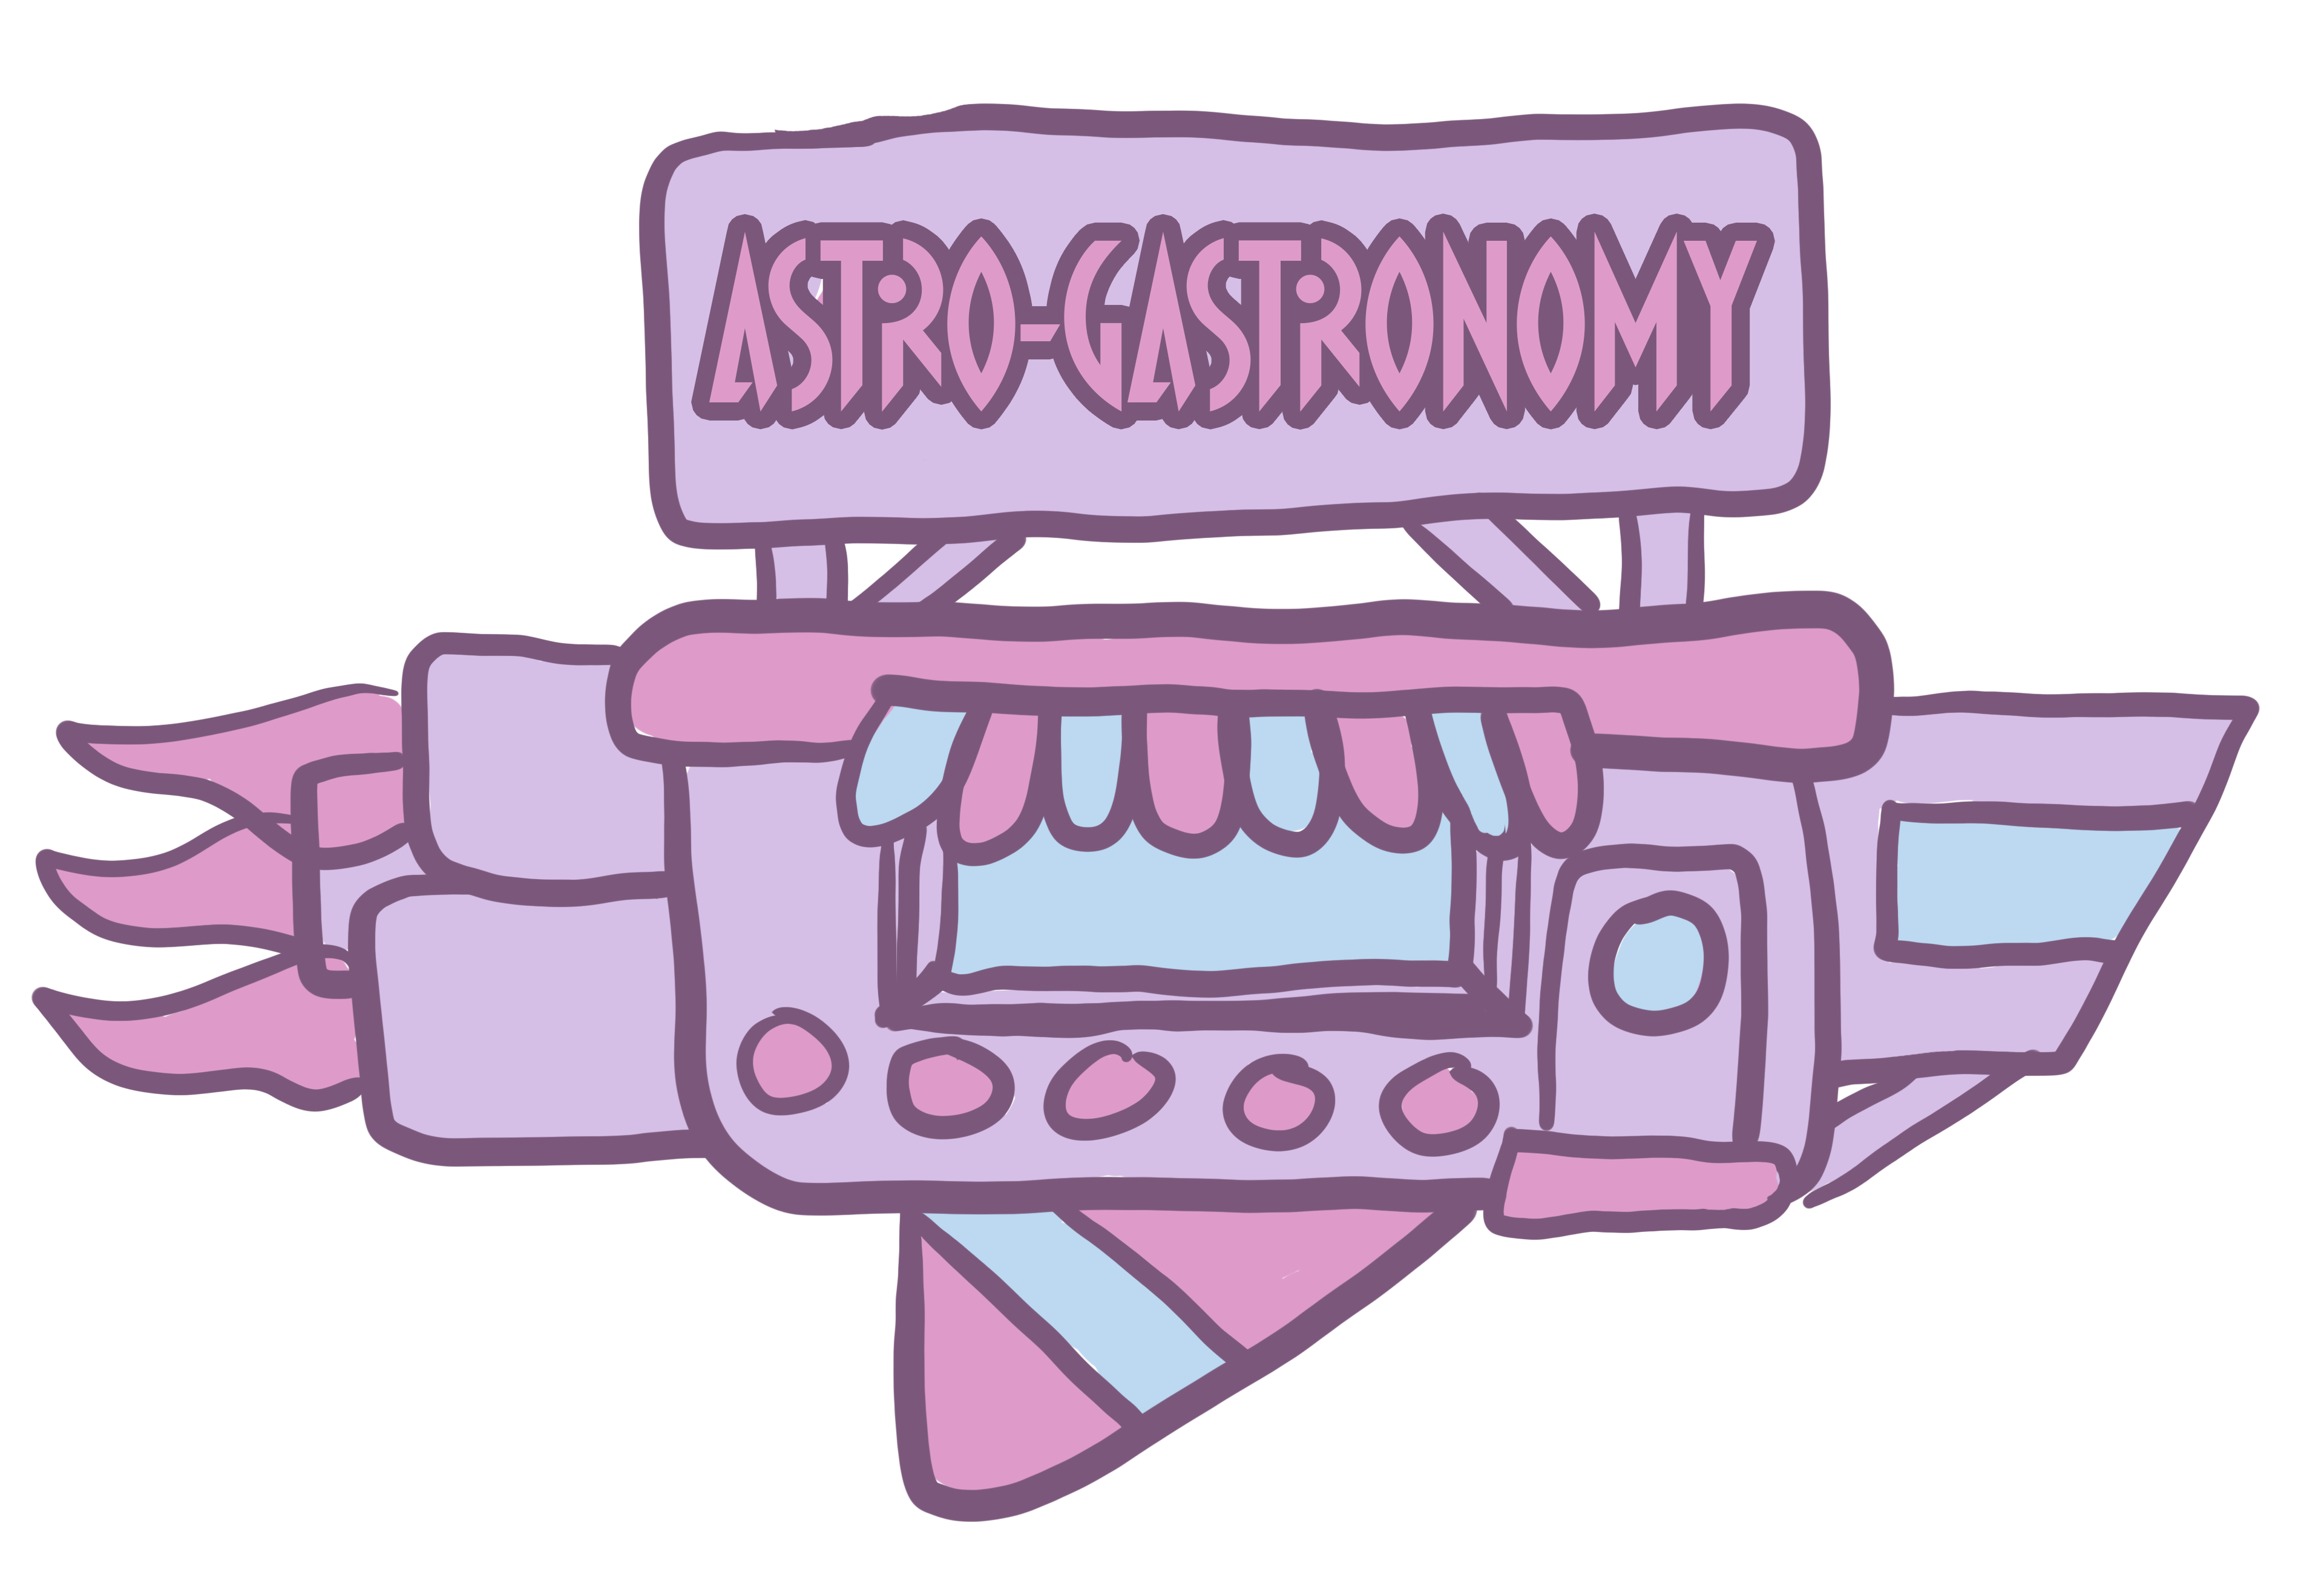 Astro-Gastronomy